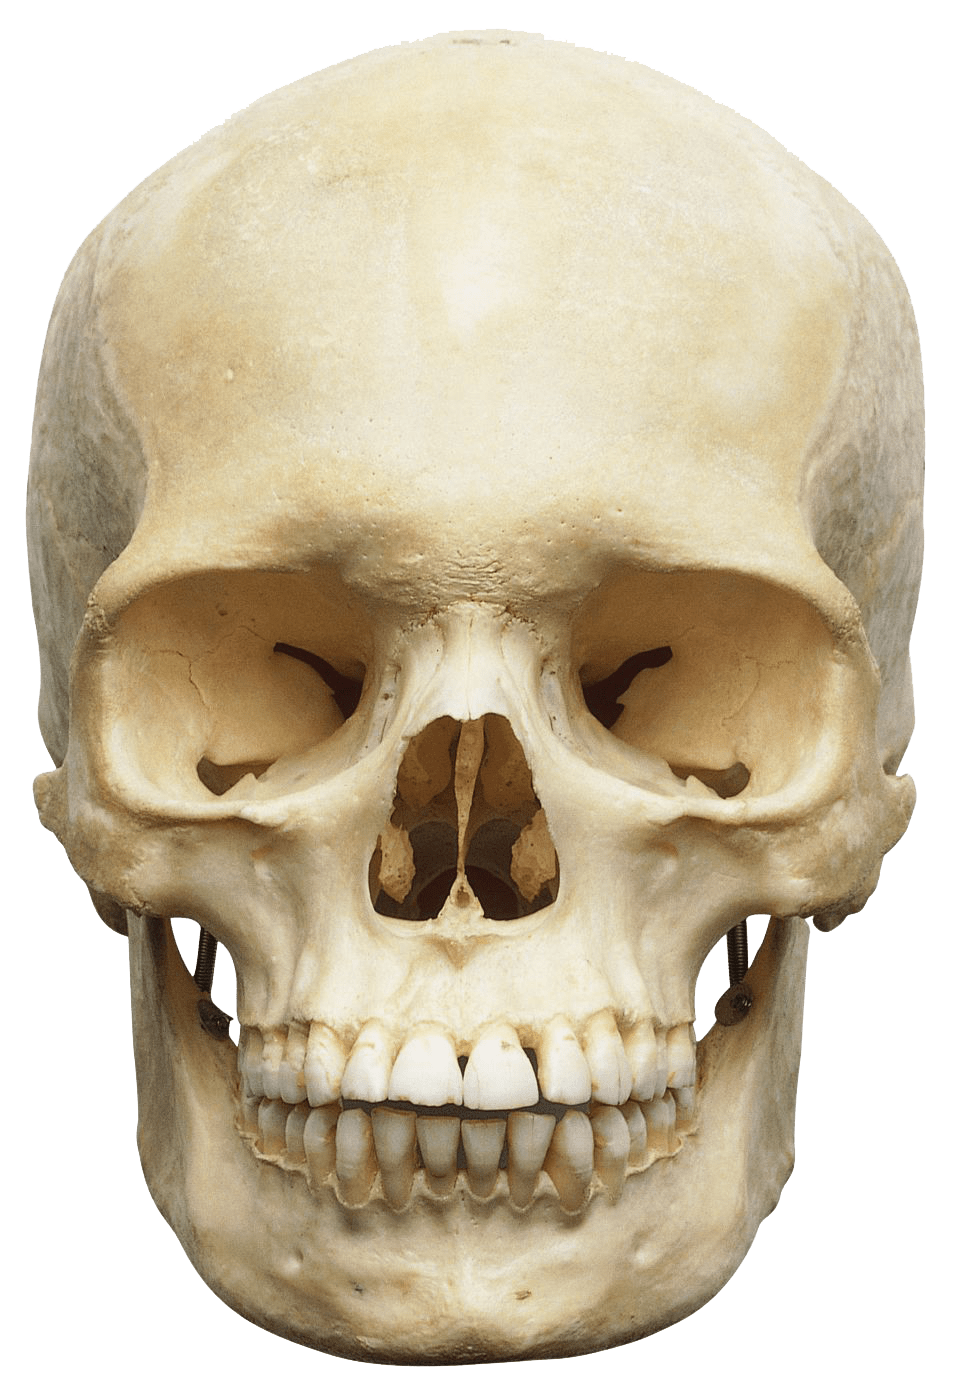 clipart skeleton skeleton head